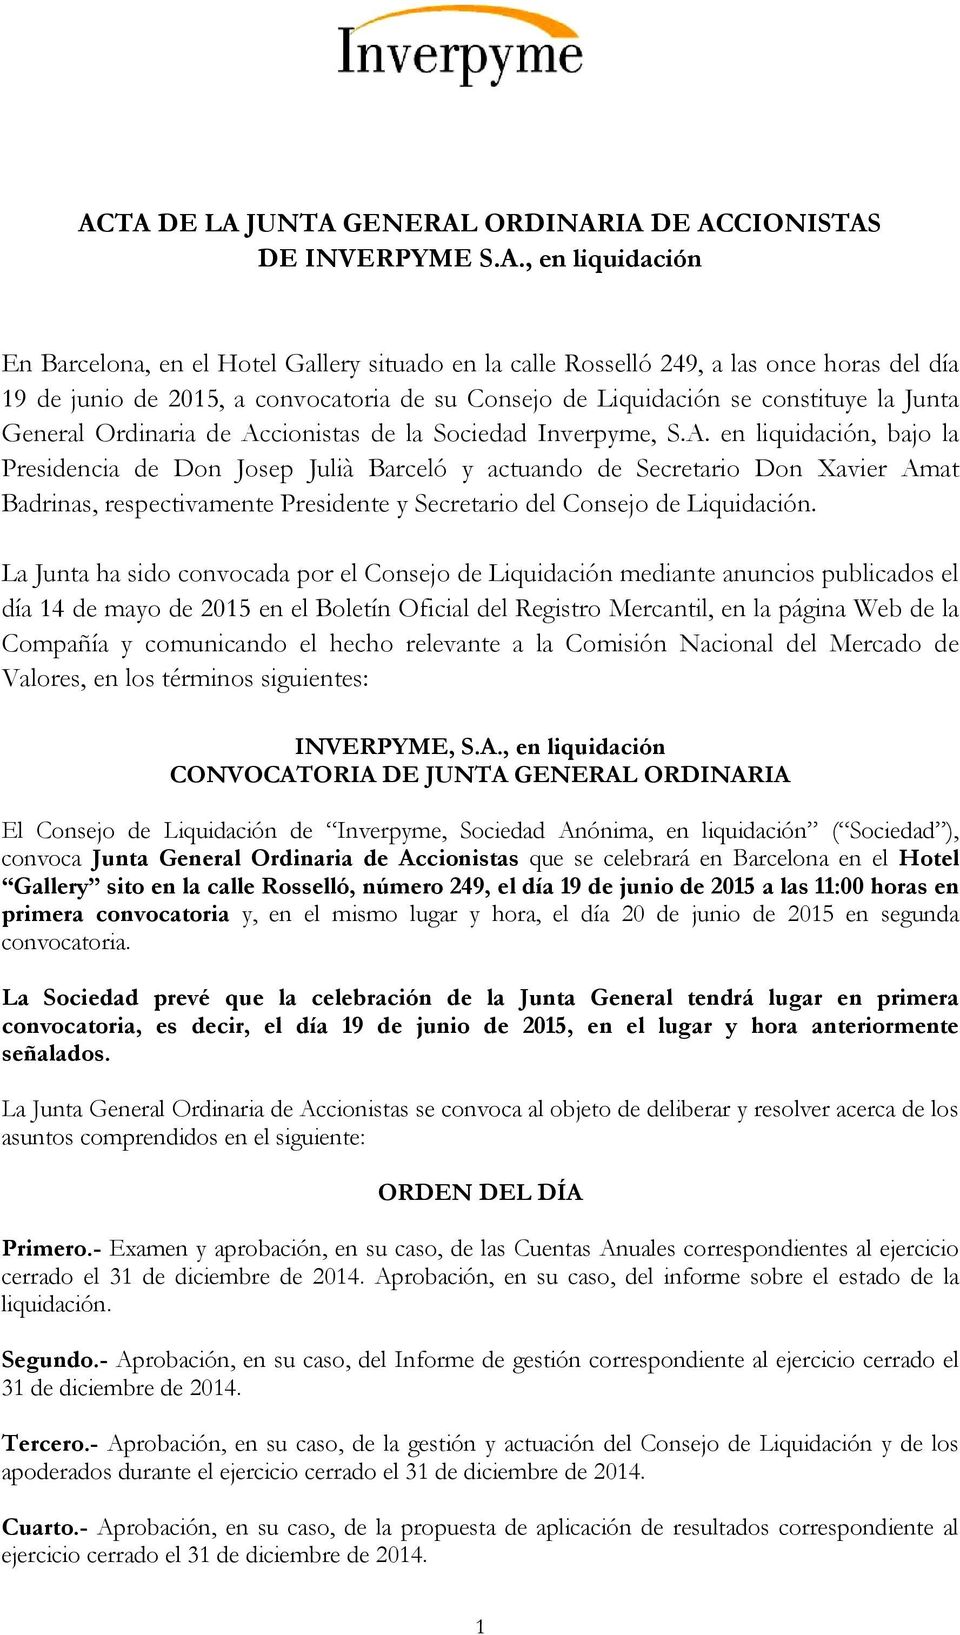 Acta De La Junta General Ordinaria De Accionistas De Inverpyme